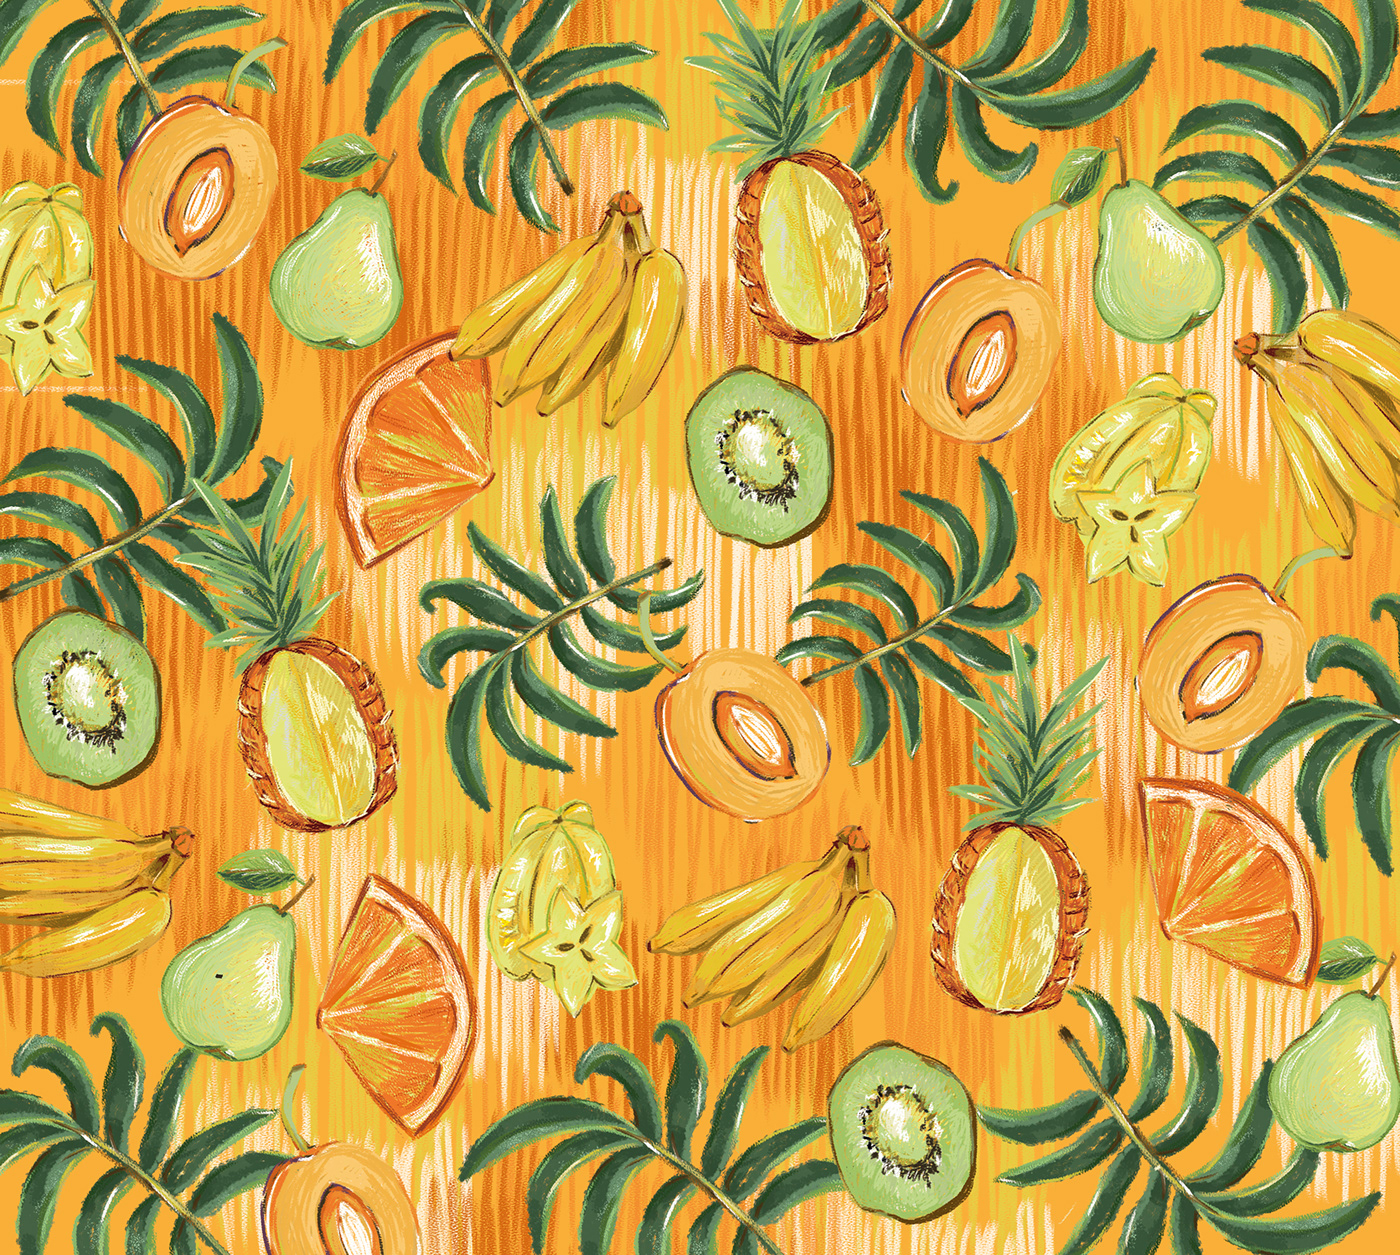 Brasil Brazil Estampa estampa brasileira estampa tropical Fruit frutas pattern print